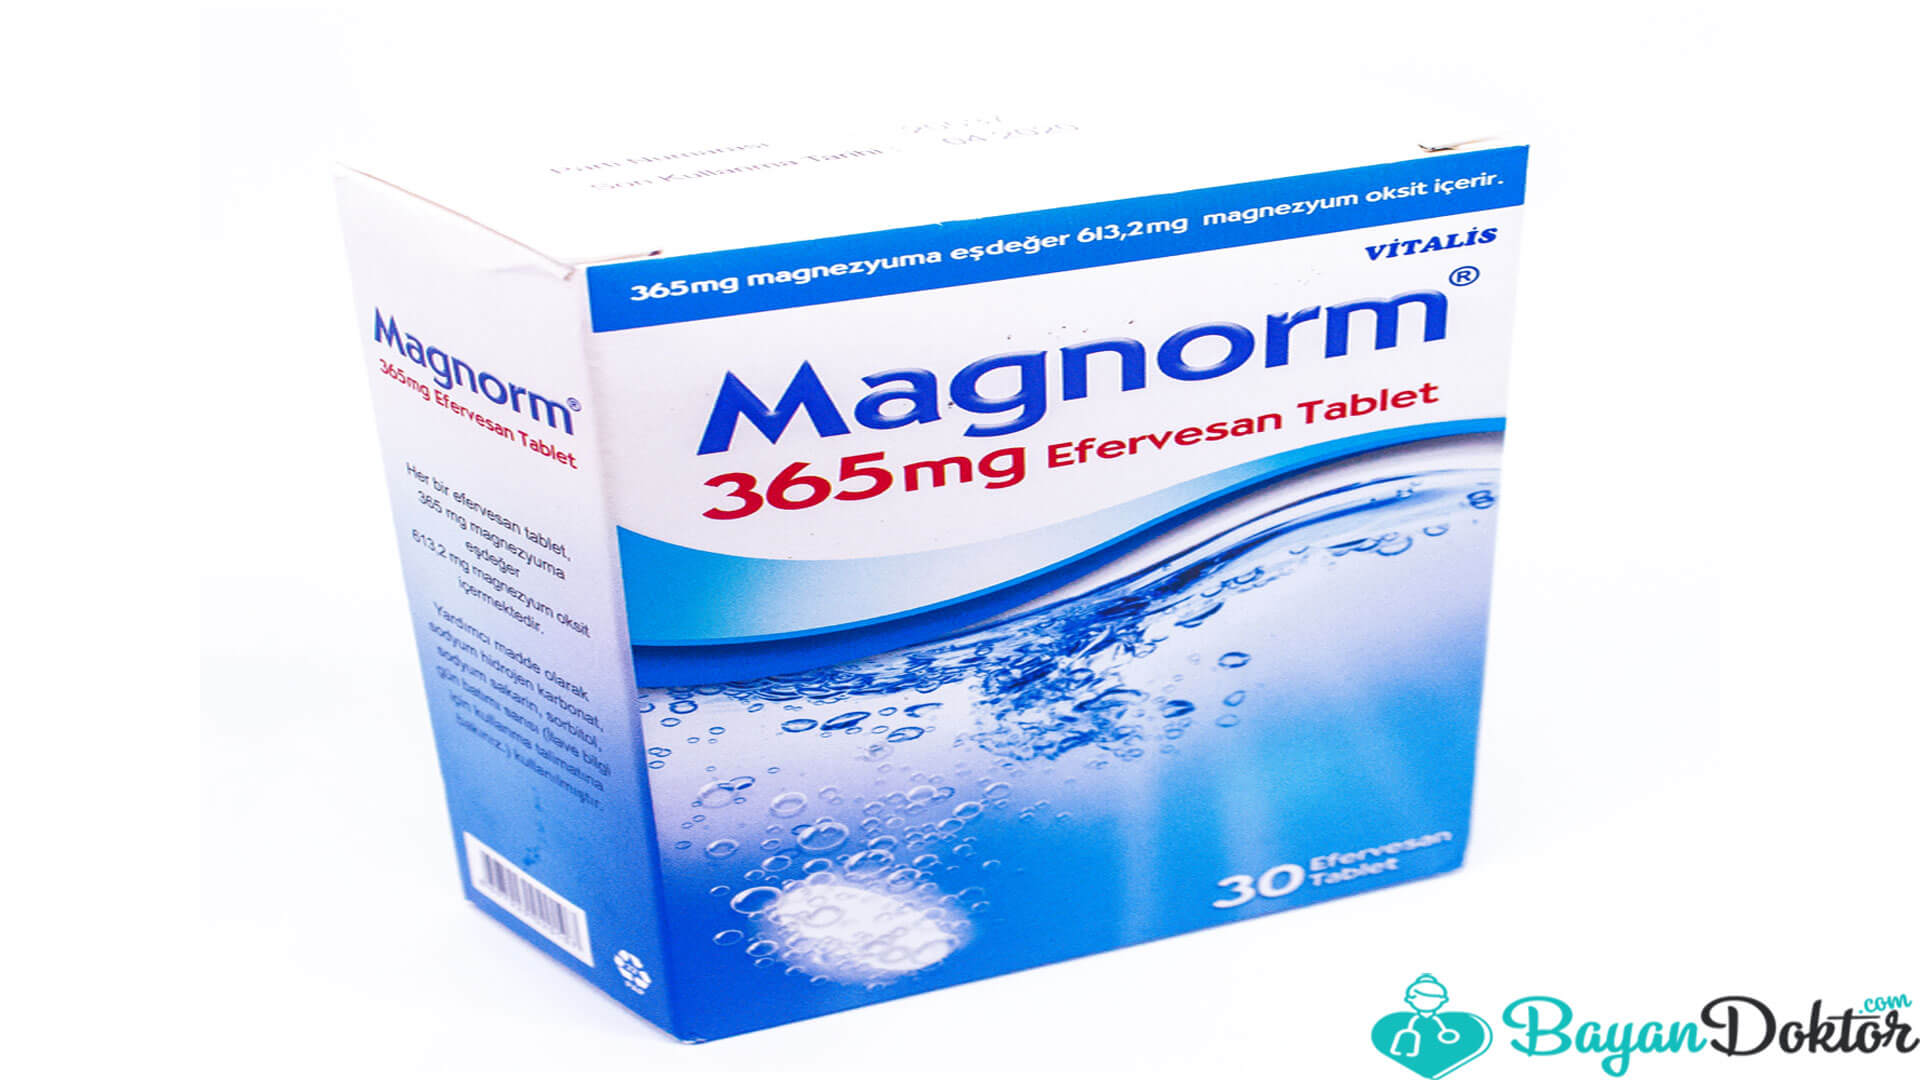 Magnorm 365 mg